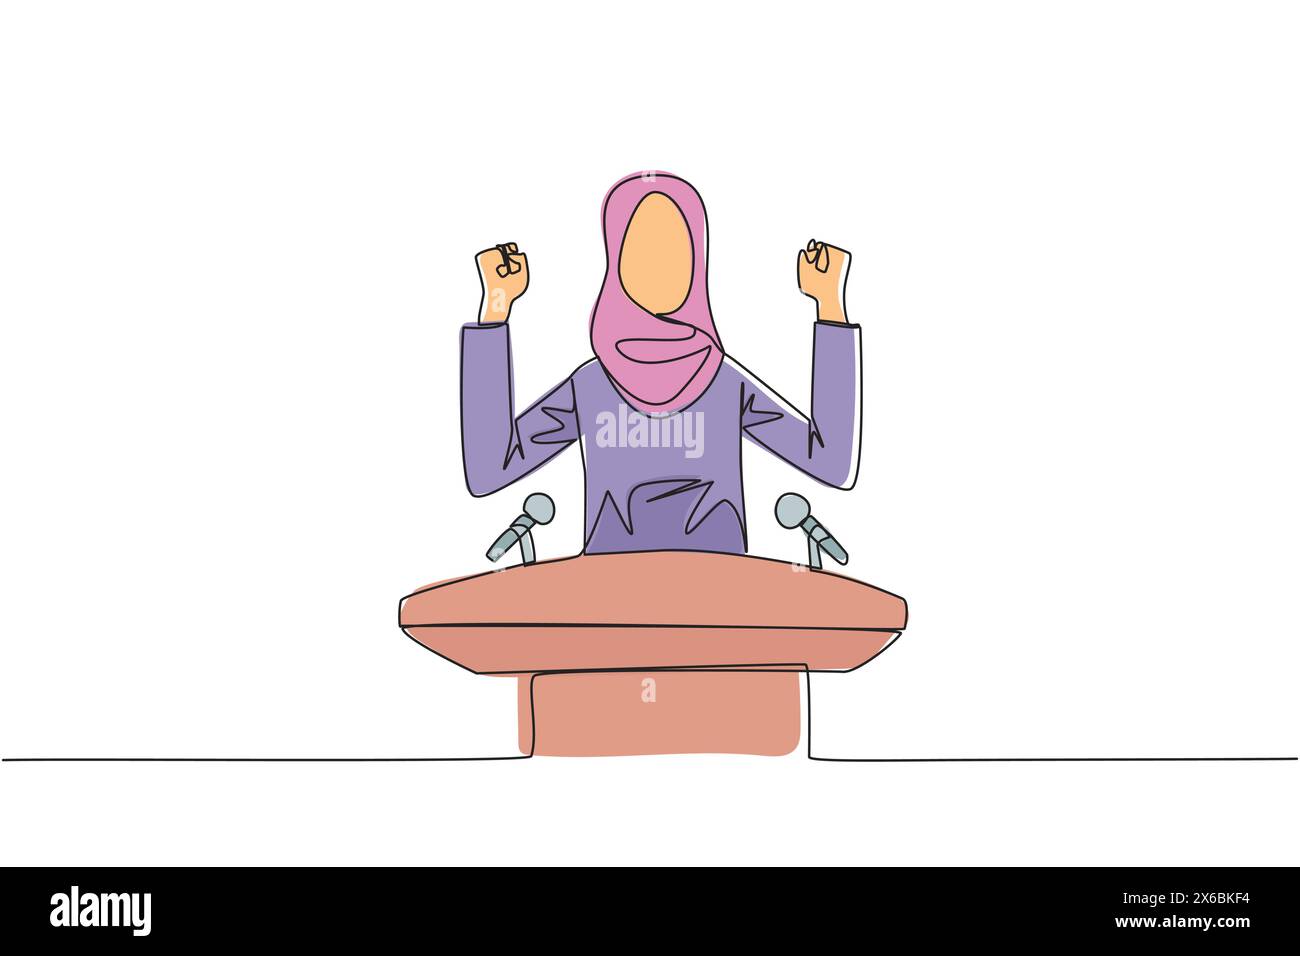 Una sola linea che attira la giovane donna d'affari araba che parla sul podio mentre alza e stringe entrambe le mani. Stile politico alla ricerca di nuovo Illustrazione Vettoriale